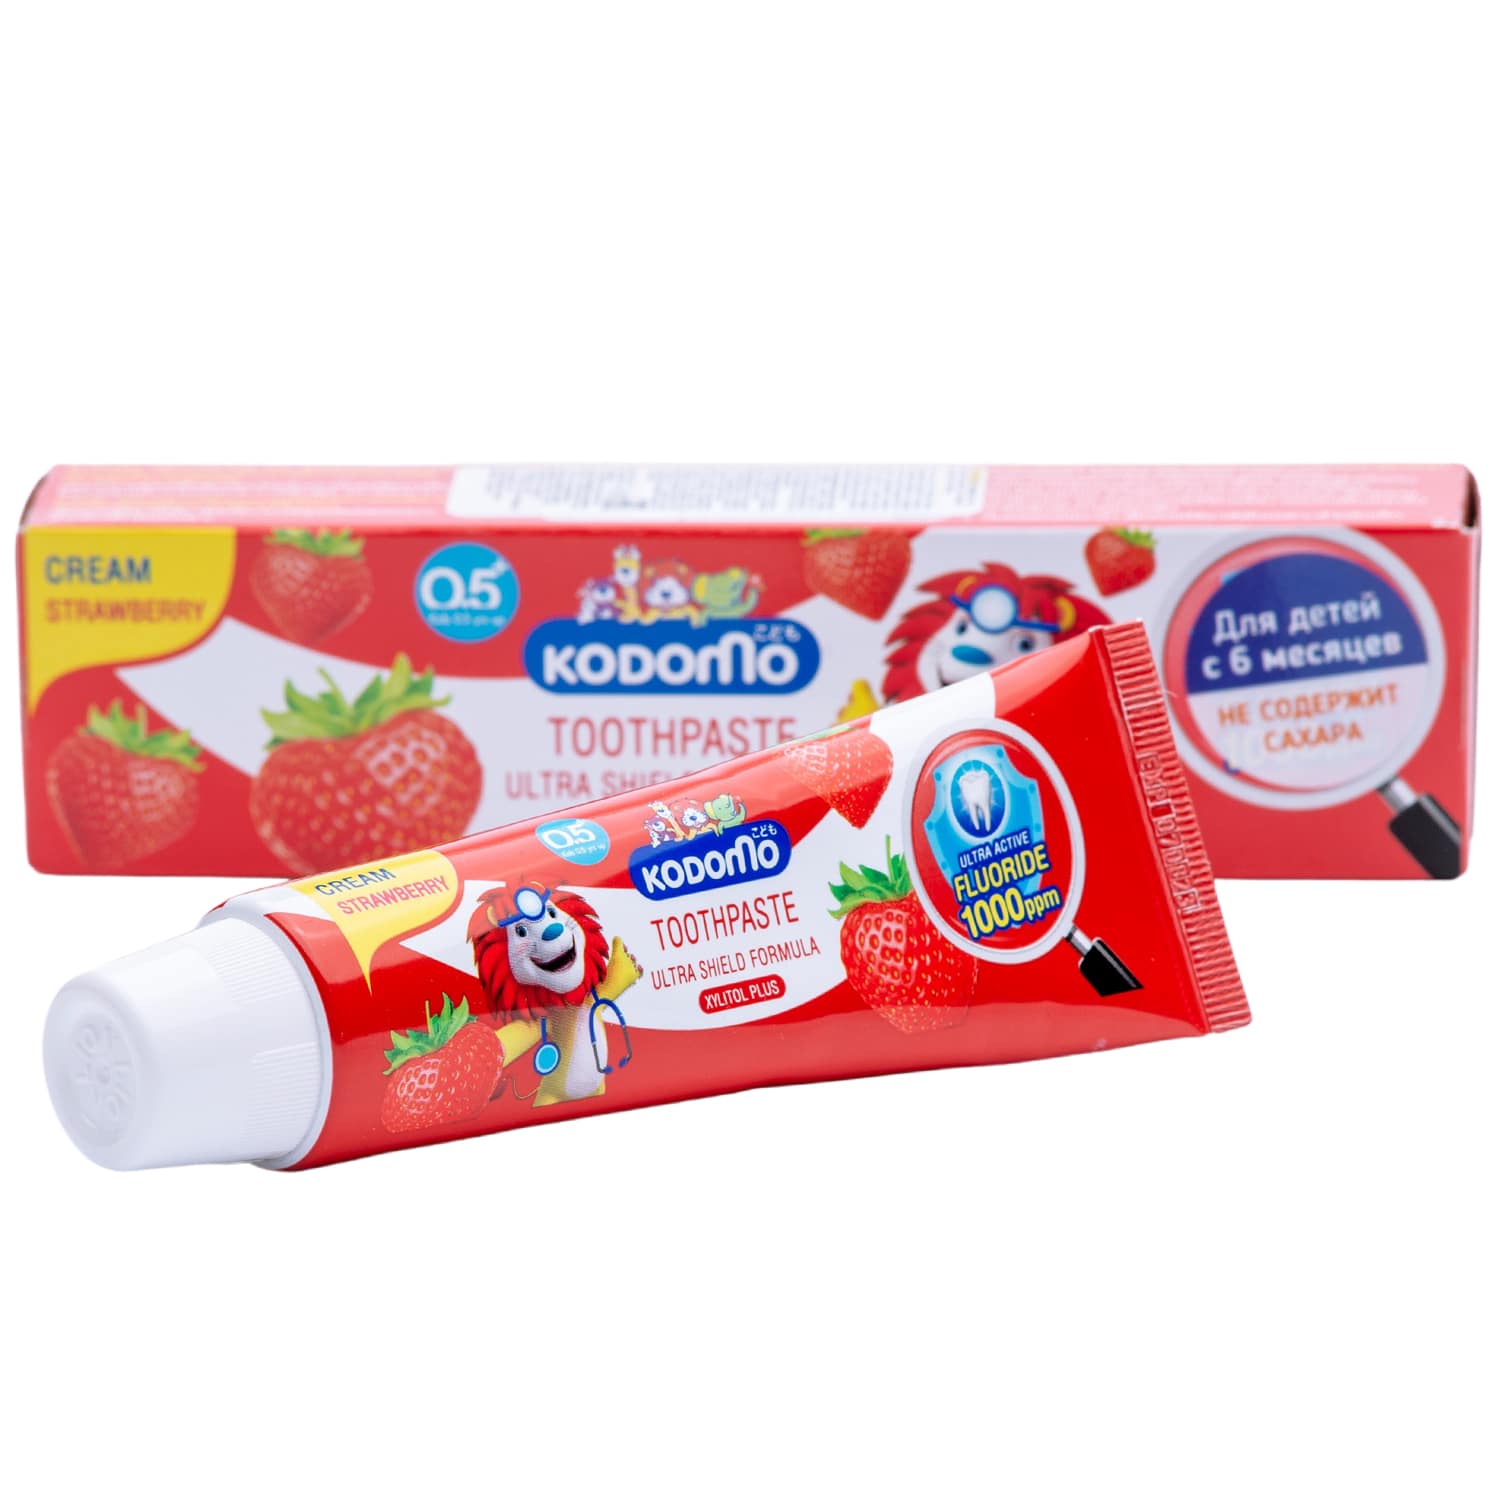 Lion Thailand Зубная паста для детей с 6 месяцев с ароматом клубники, 65 г (Lion Thailand, Kodomo)